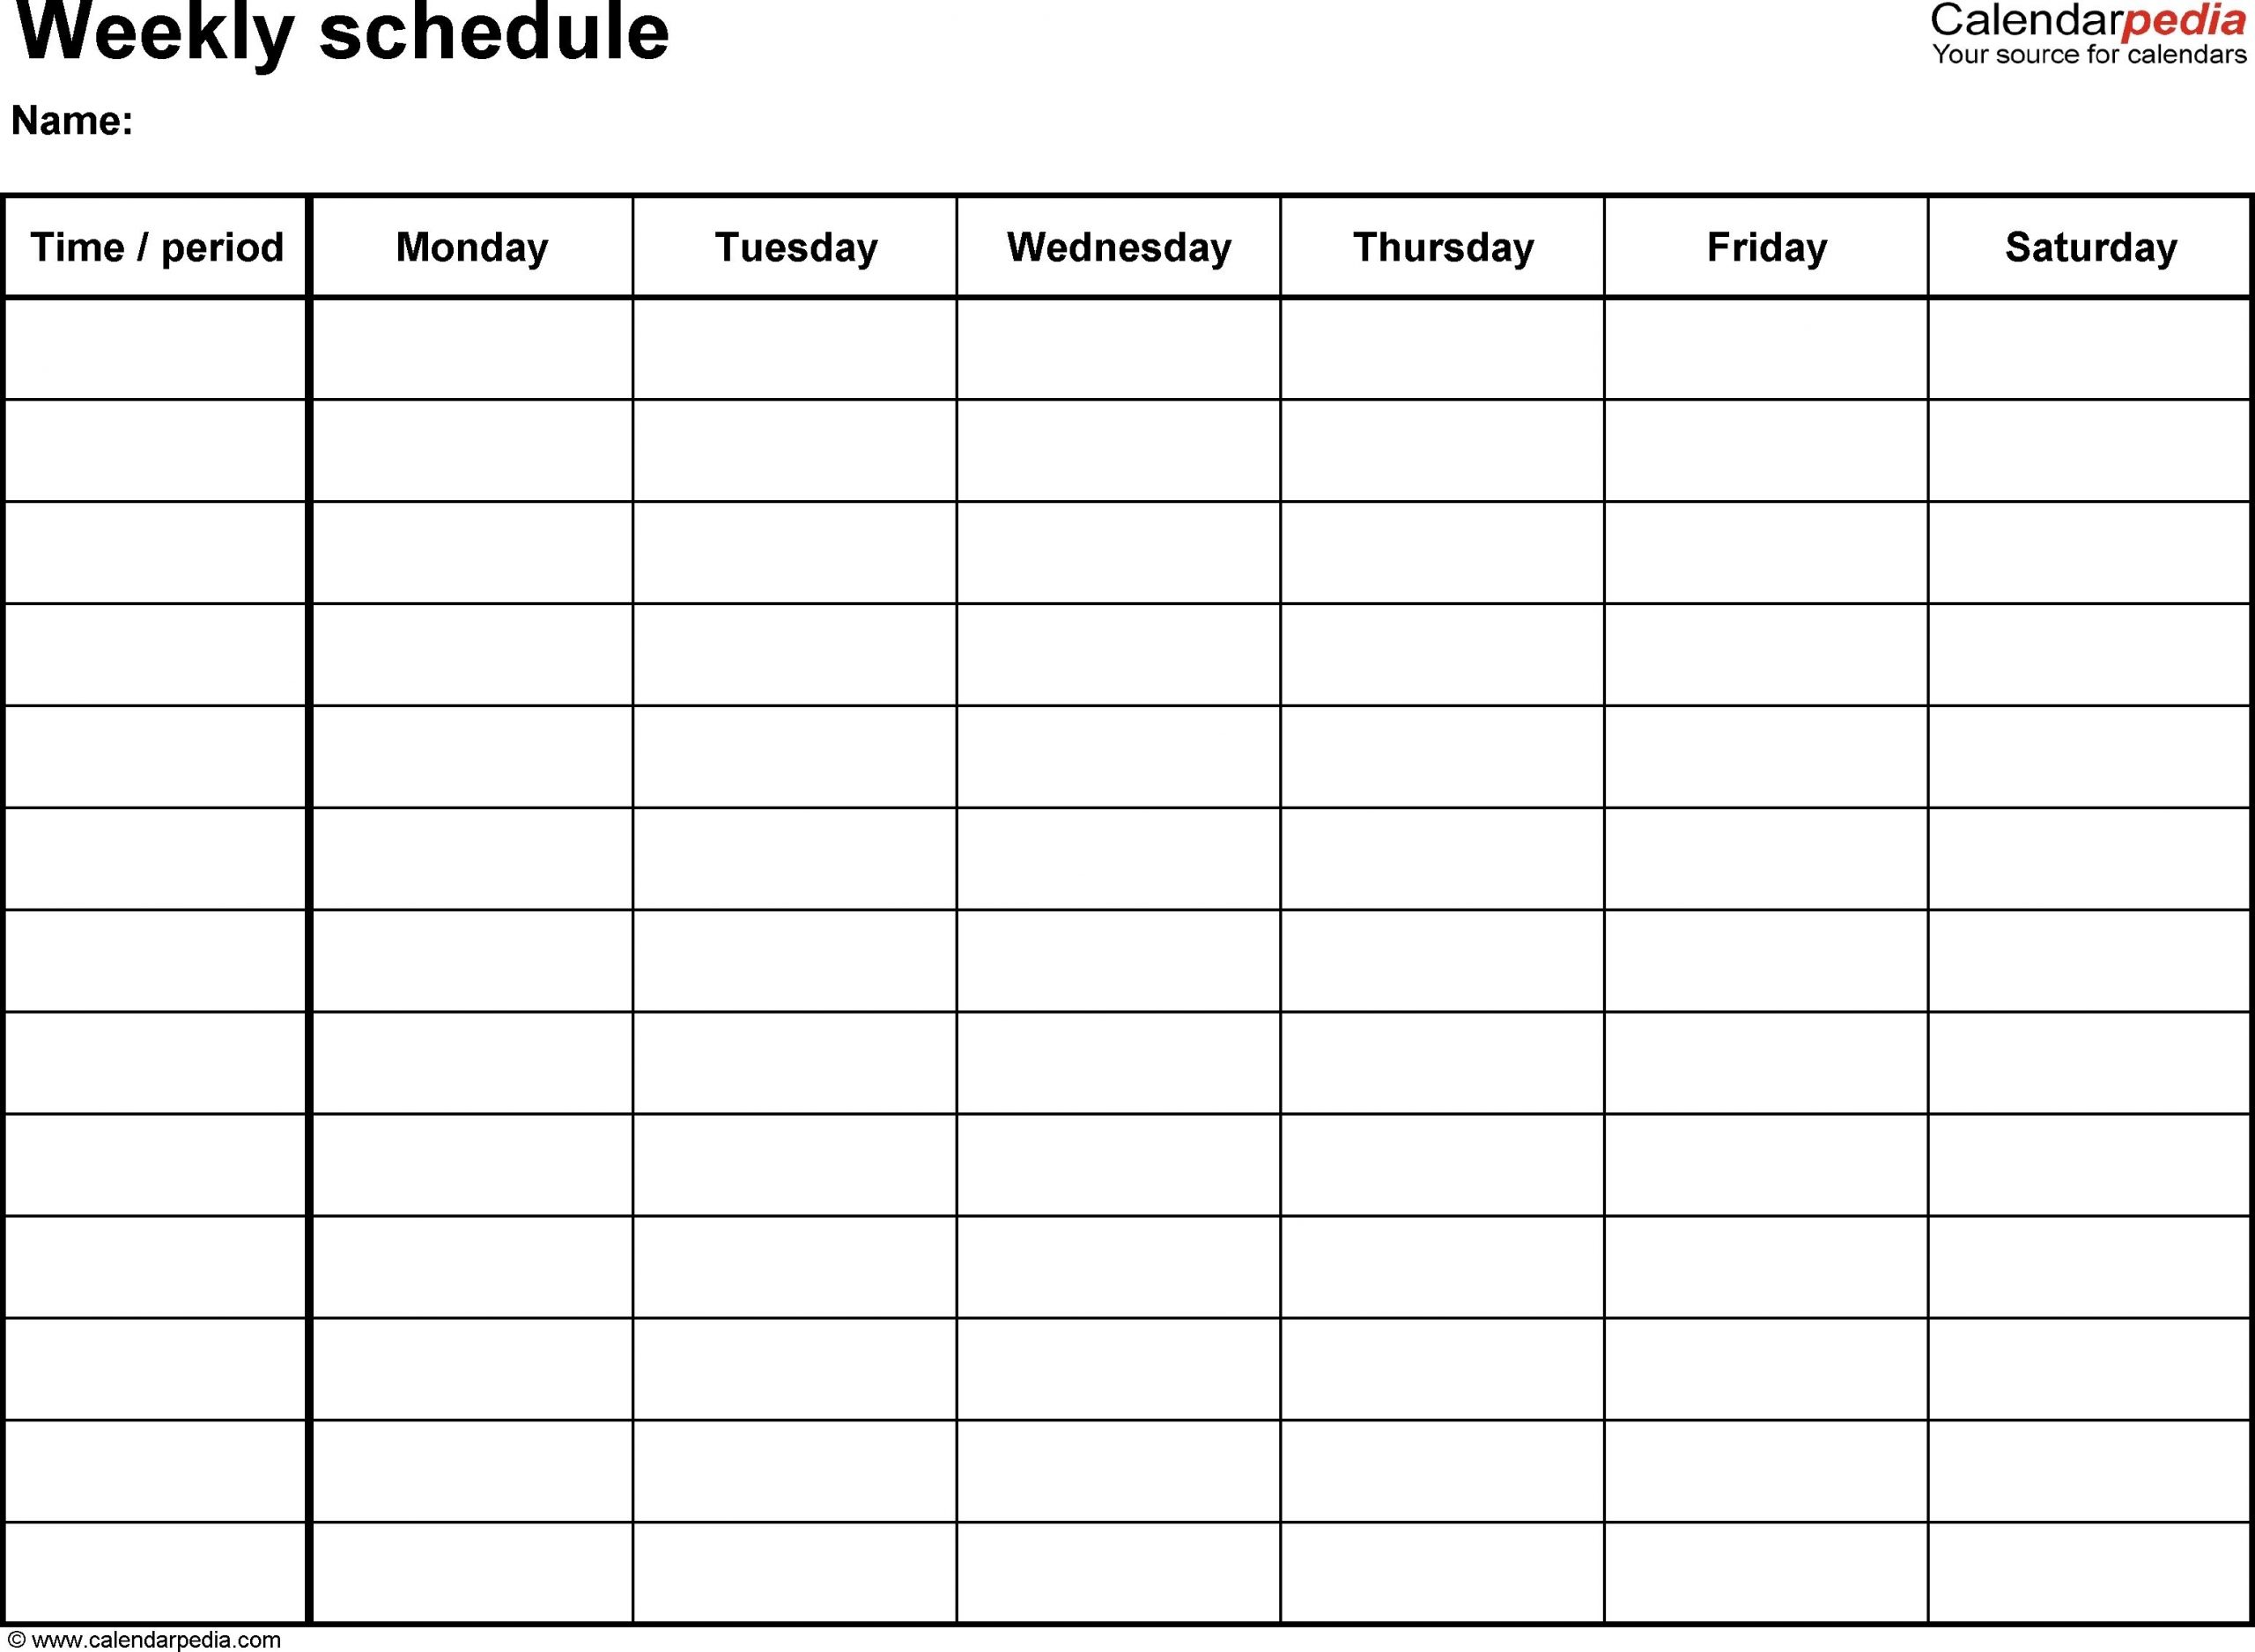 Fillable Weekly Calendar Printable Weekly Calendar With 15 inside Editable Calendar With Time Slots